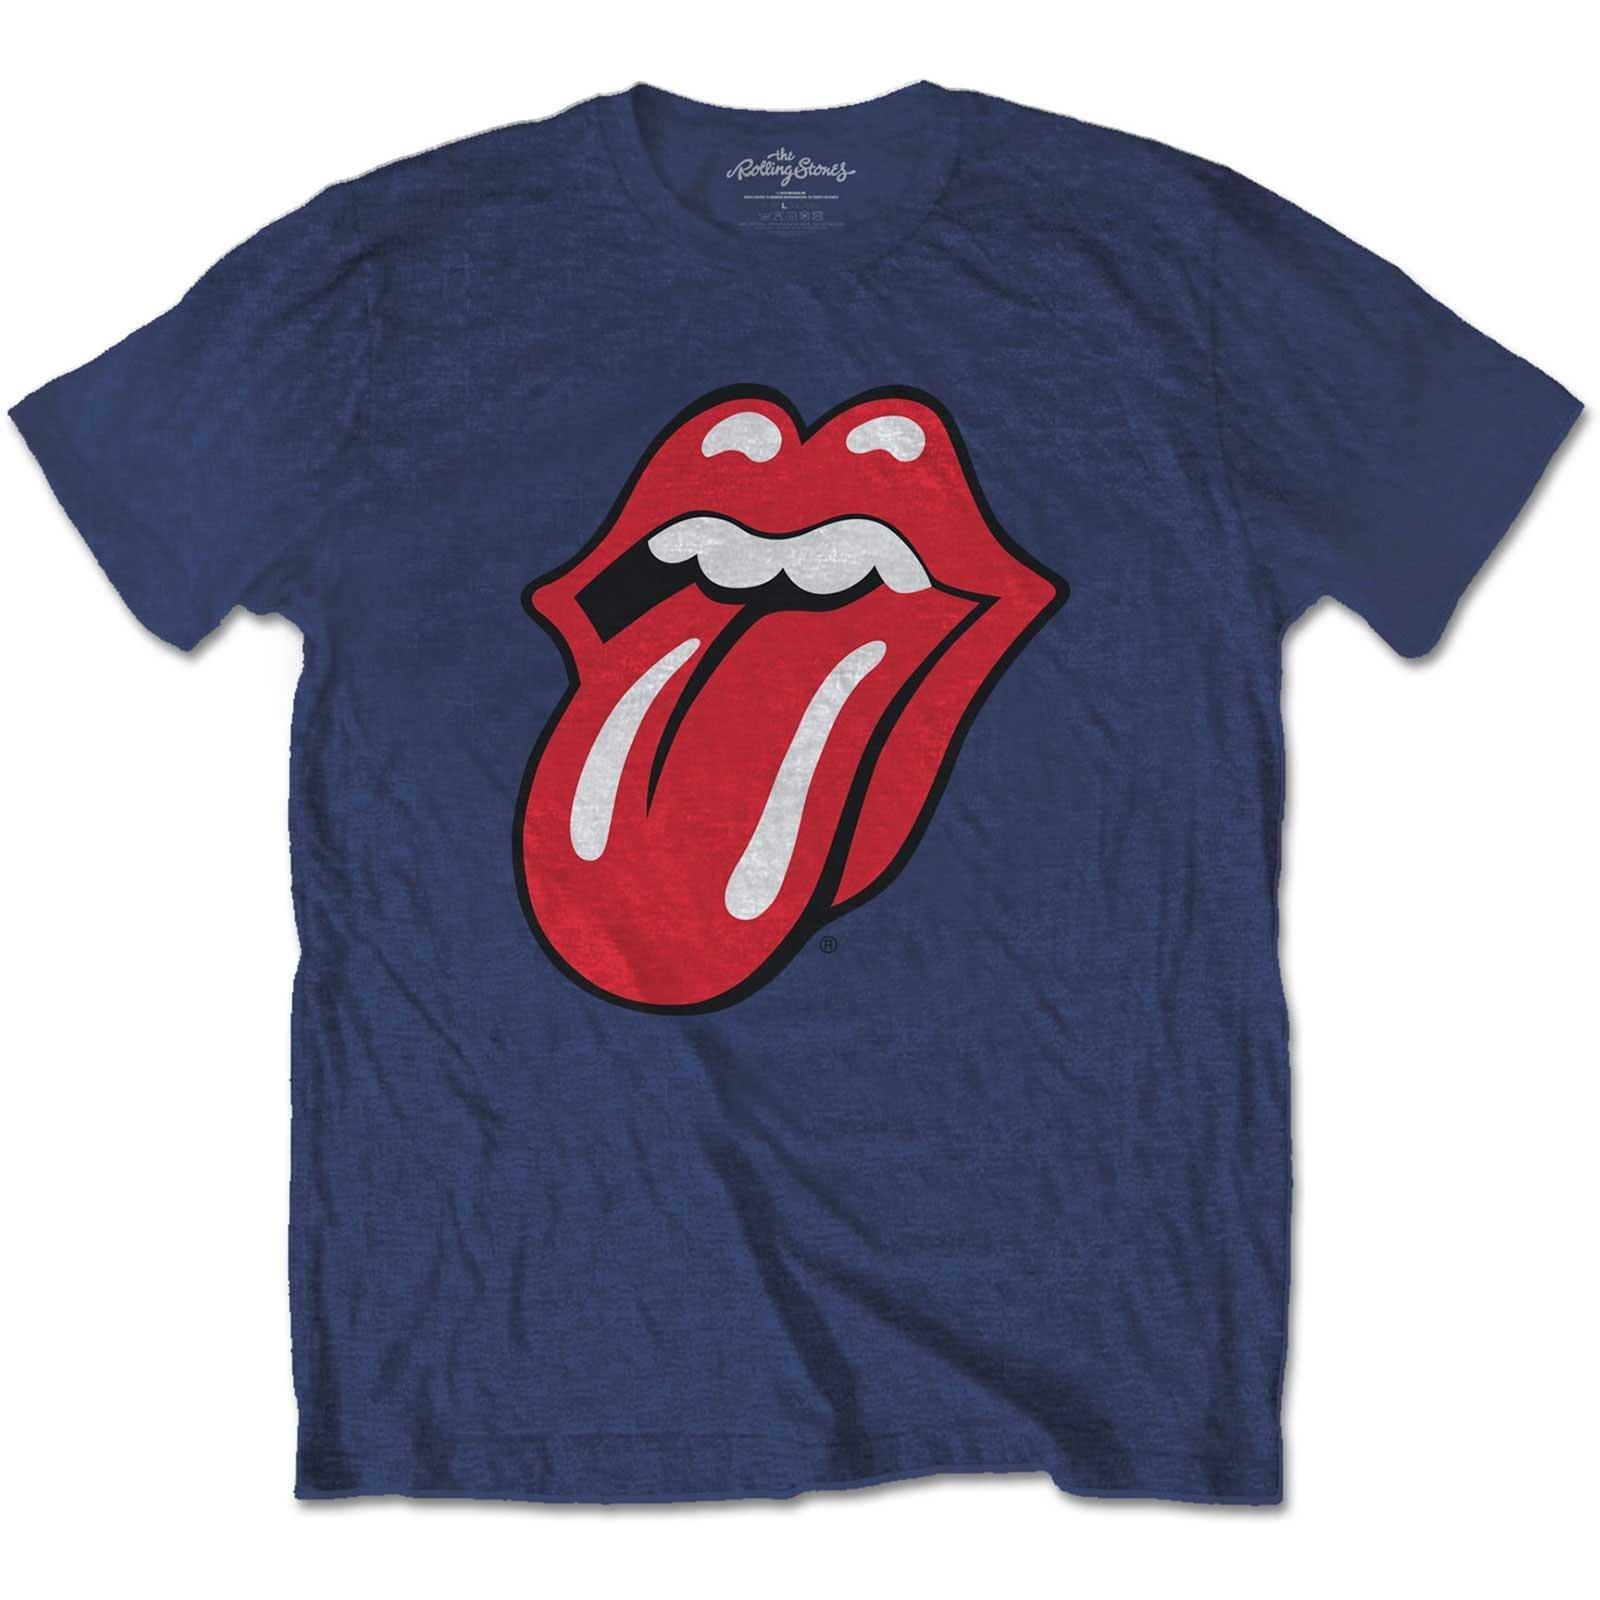 Classic Tshirt Jungen Marine 128 von The Rolling Stones